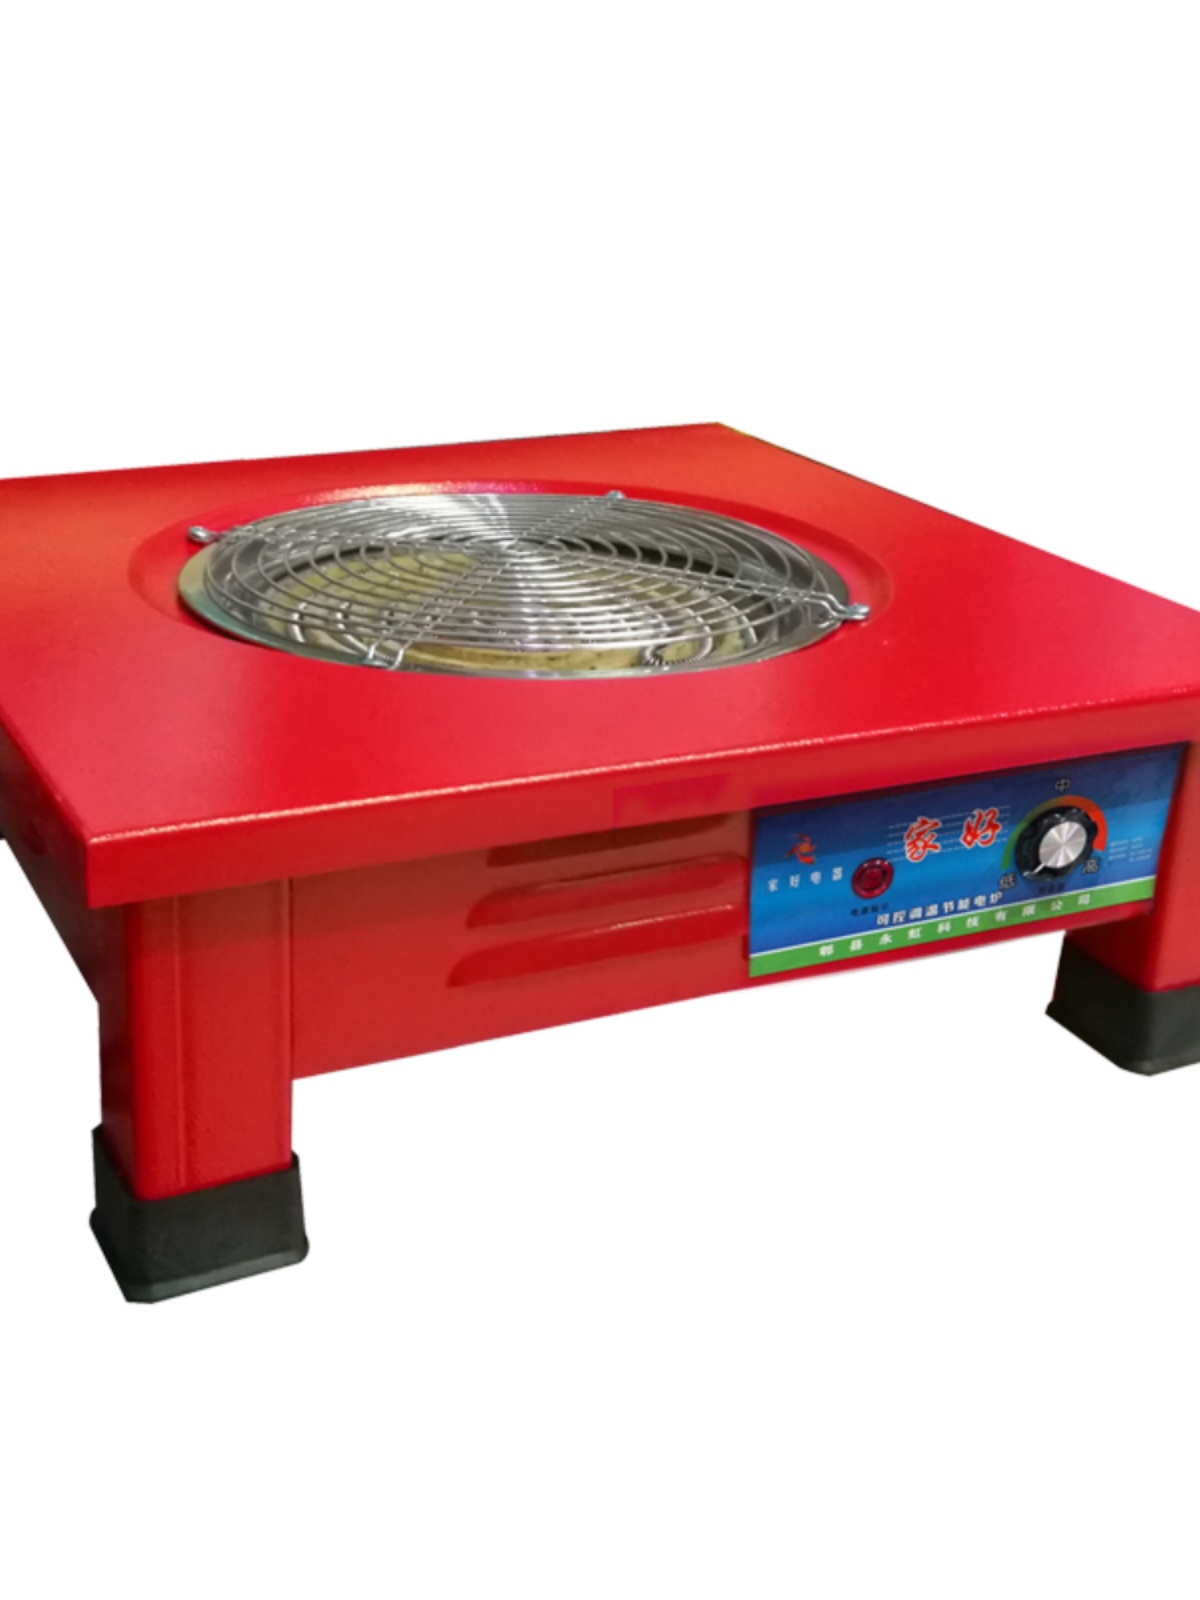 新款烧烤炉电热炉家用大功率器烤火烧菜做饭多功能电炉灶取暖桌子